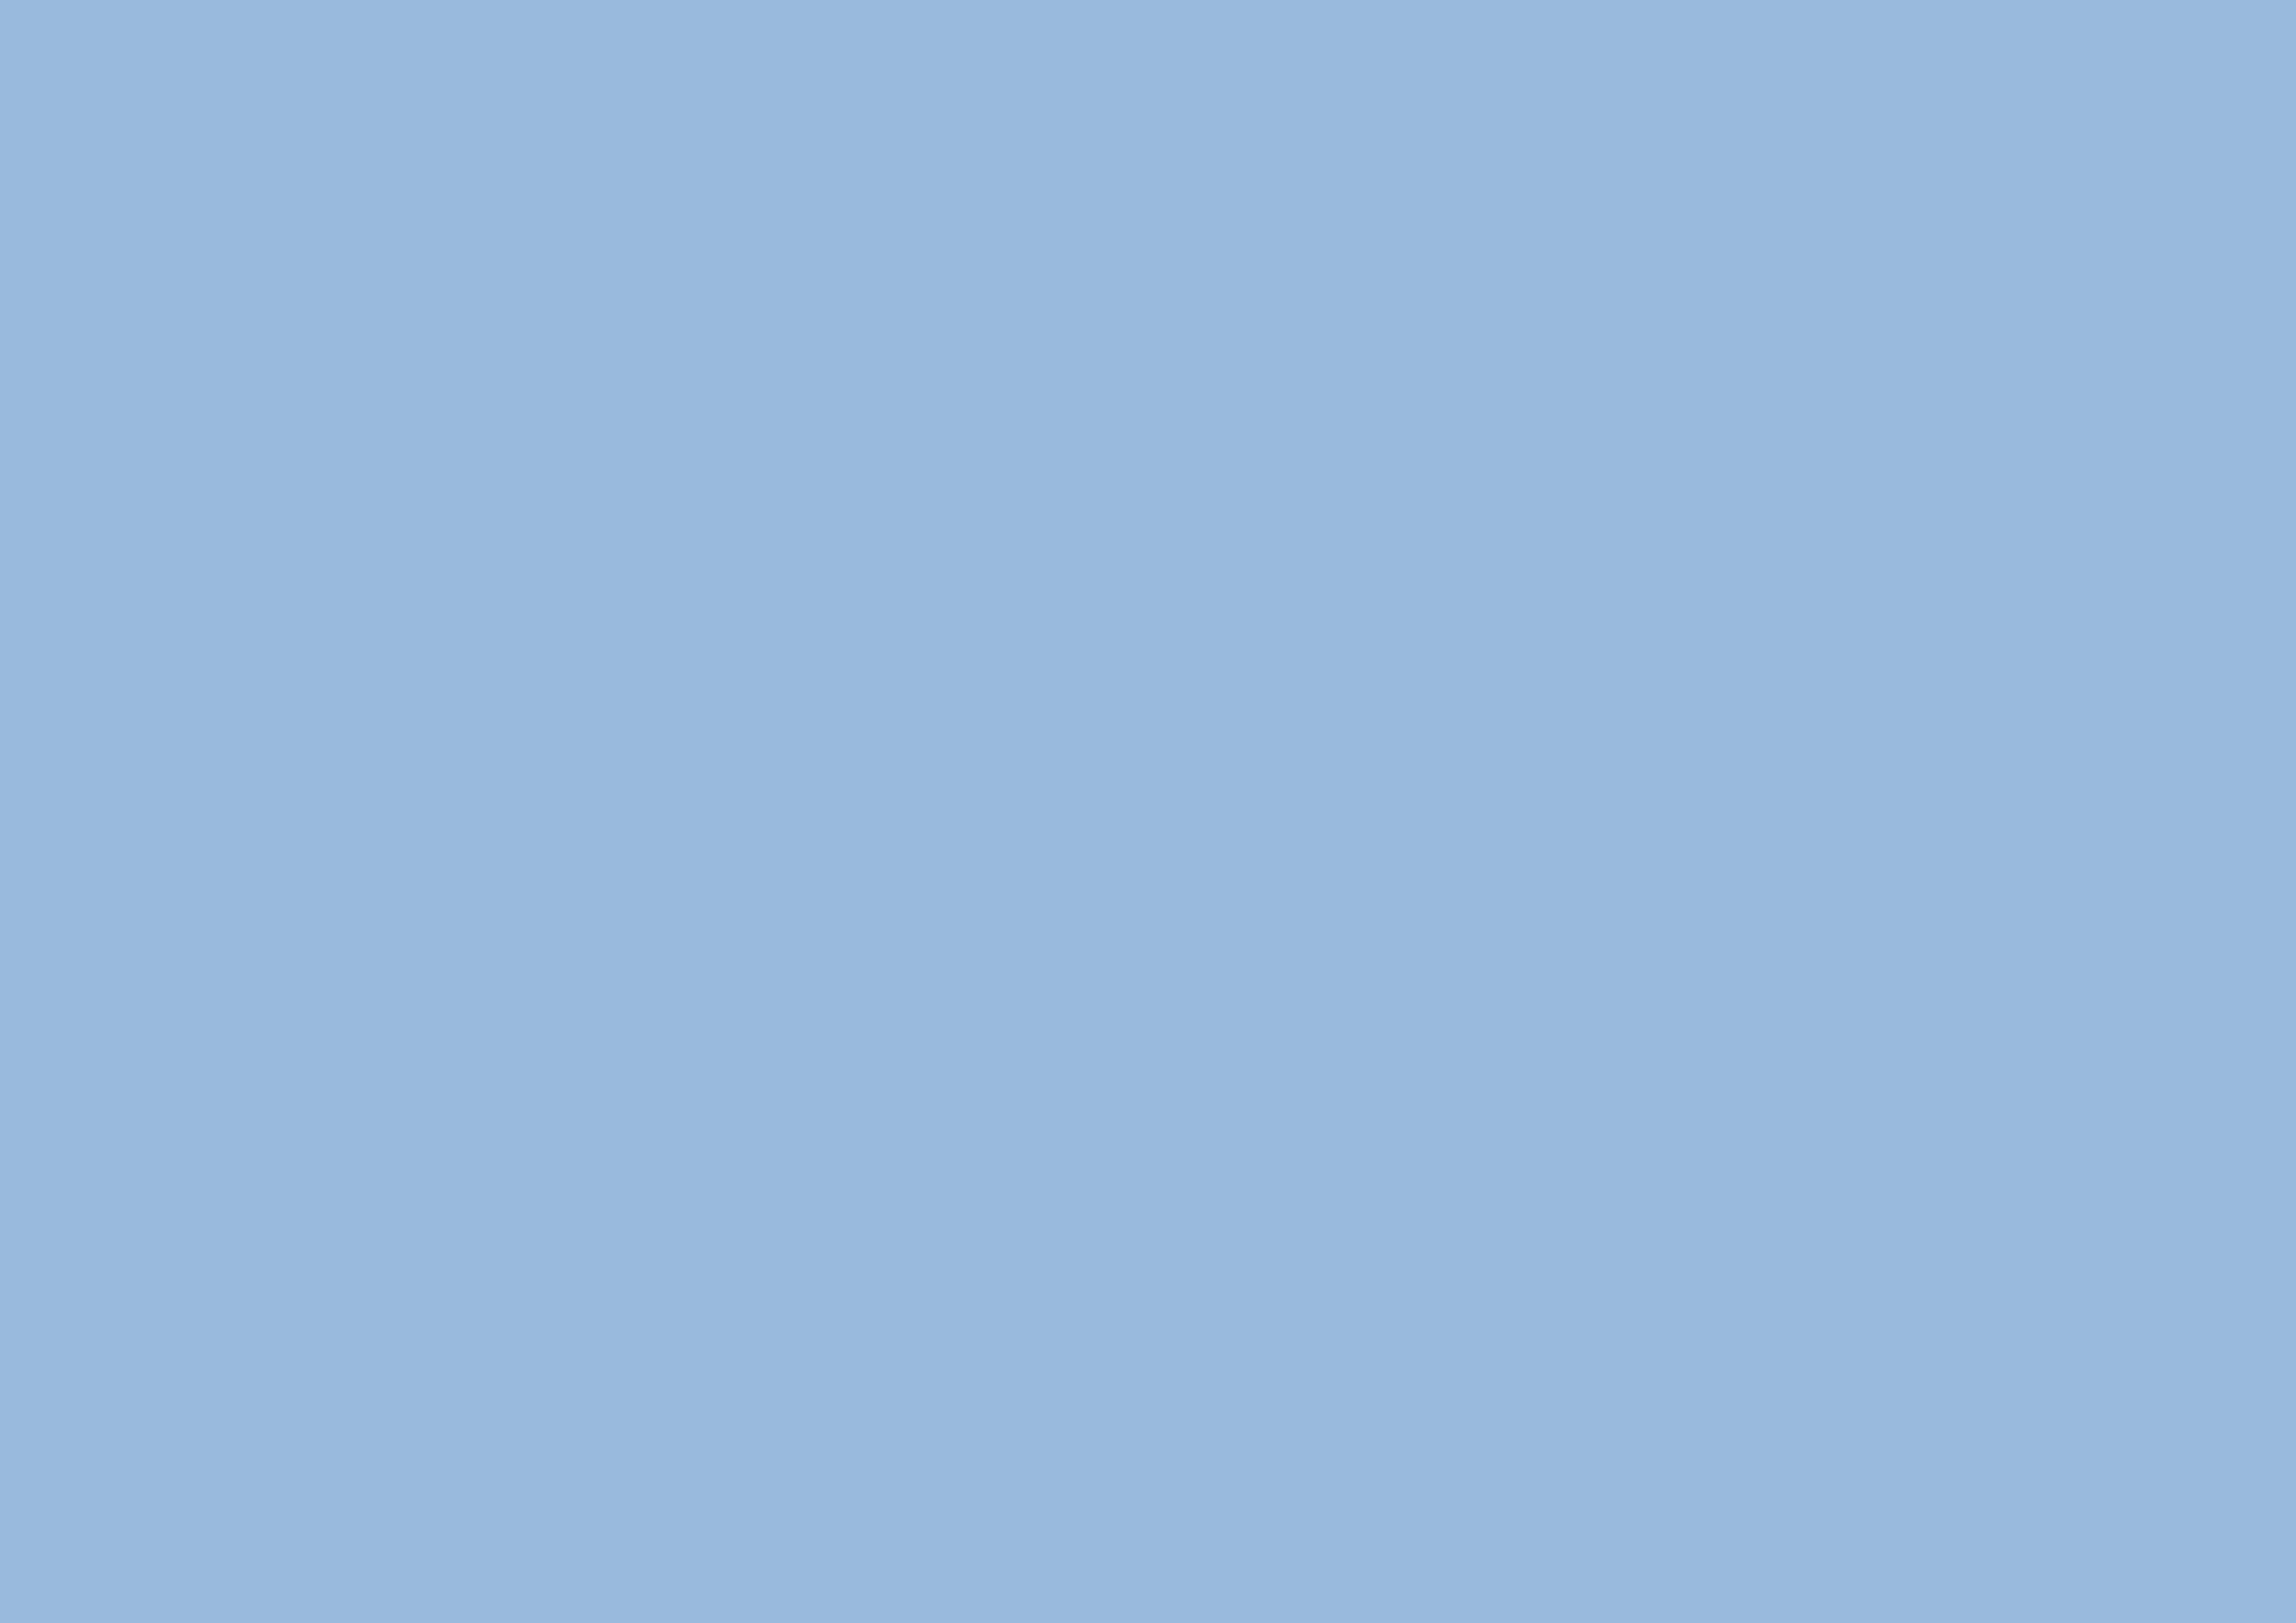 3508x2480 Carolina Blue Solid Color Background